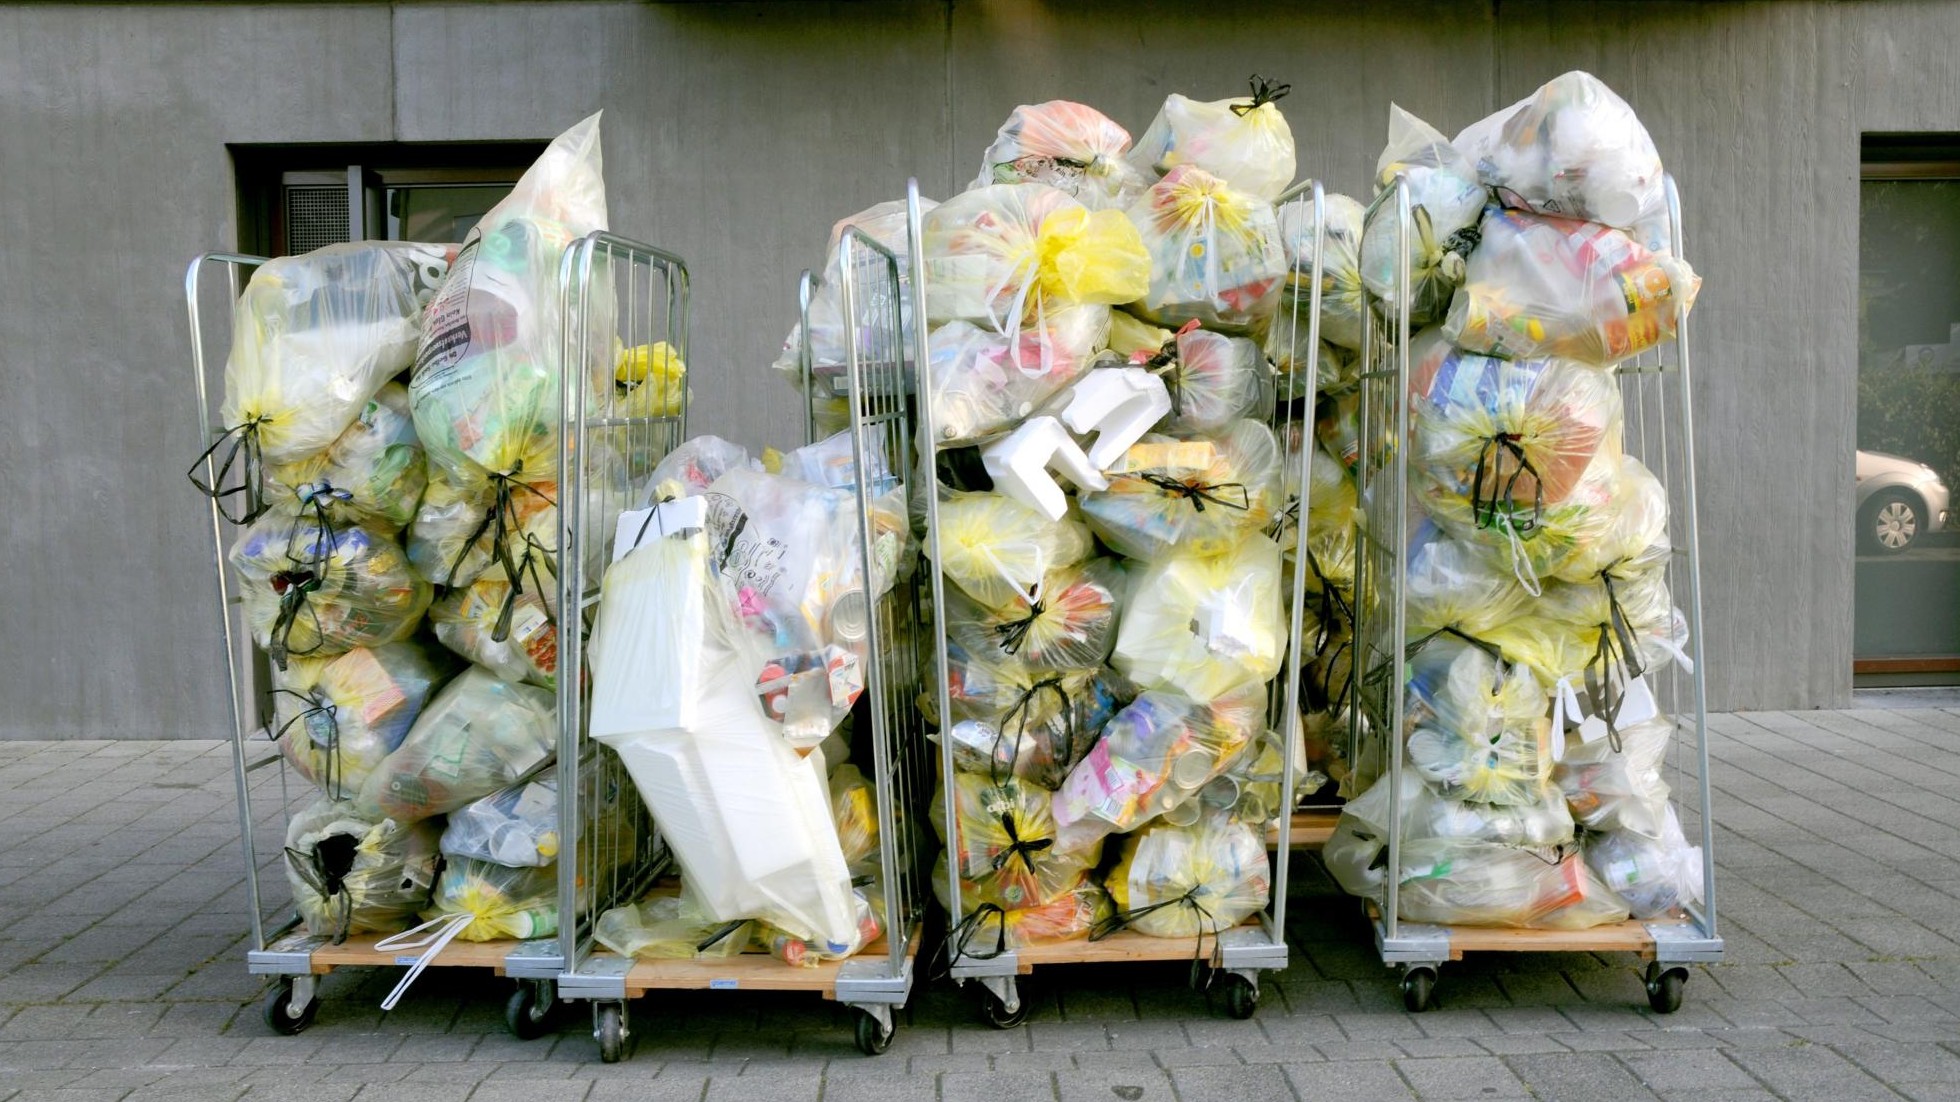 Verpackungen - Verbraucher können Plastikrecycling verbessern